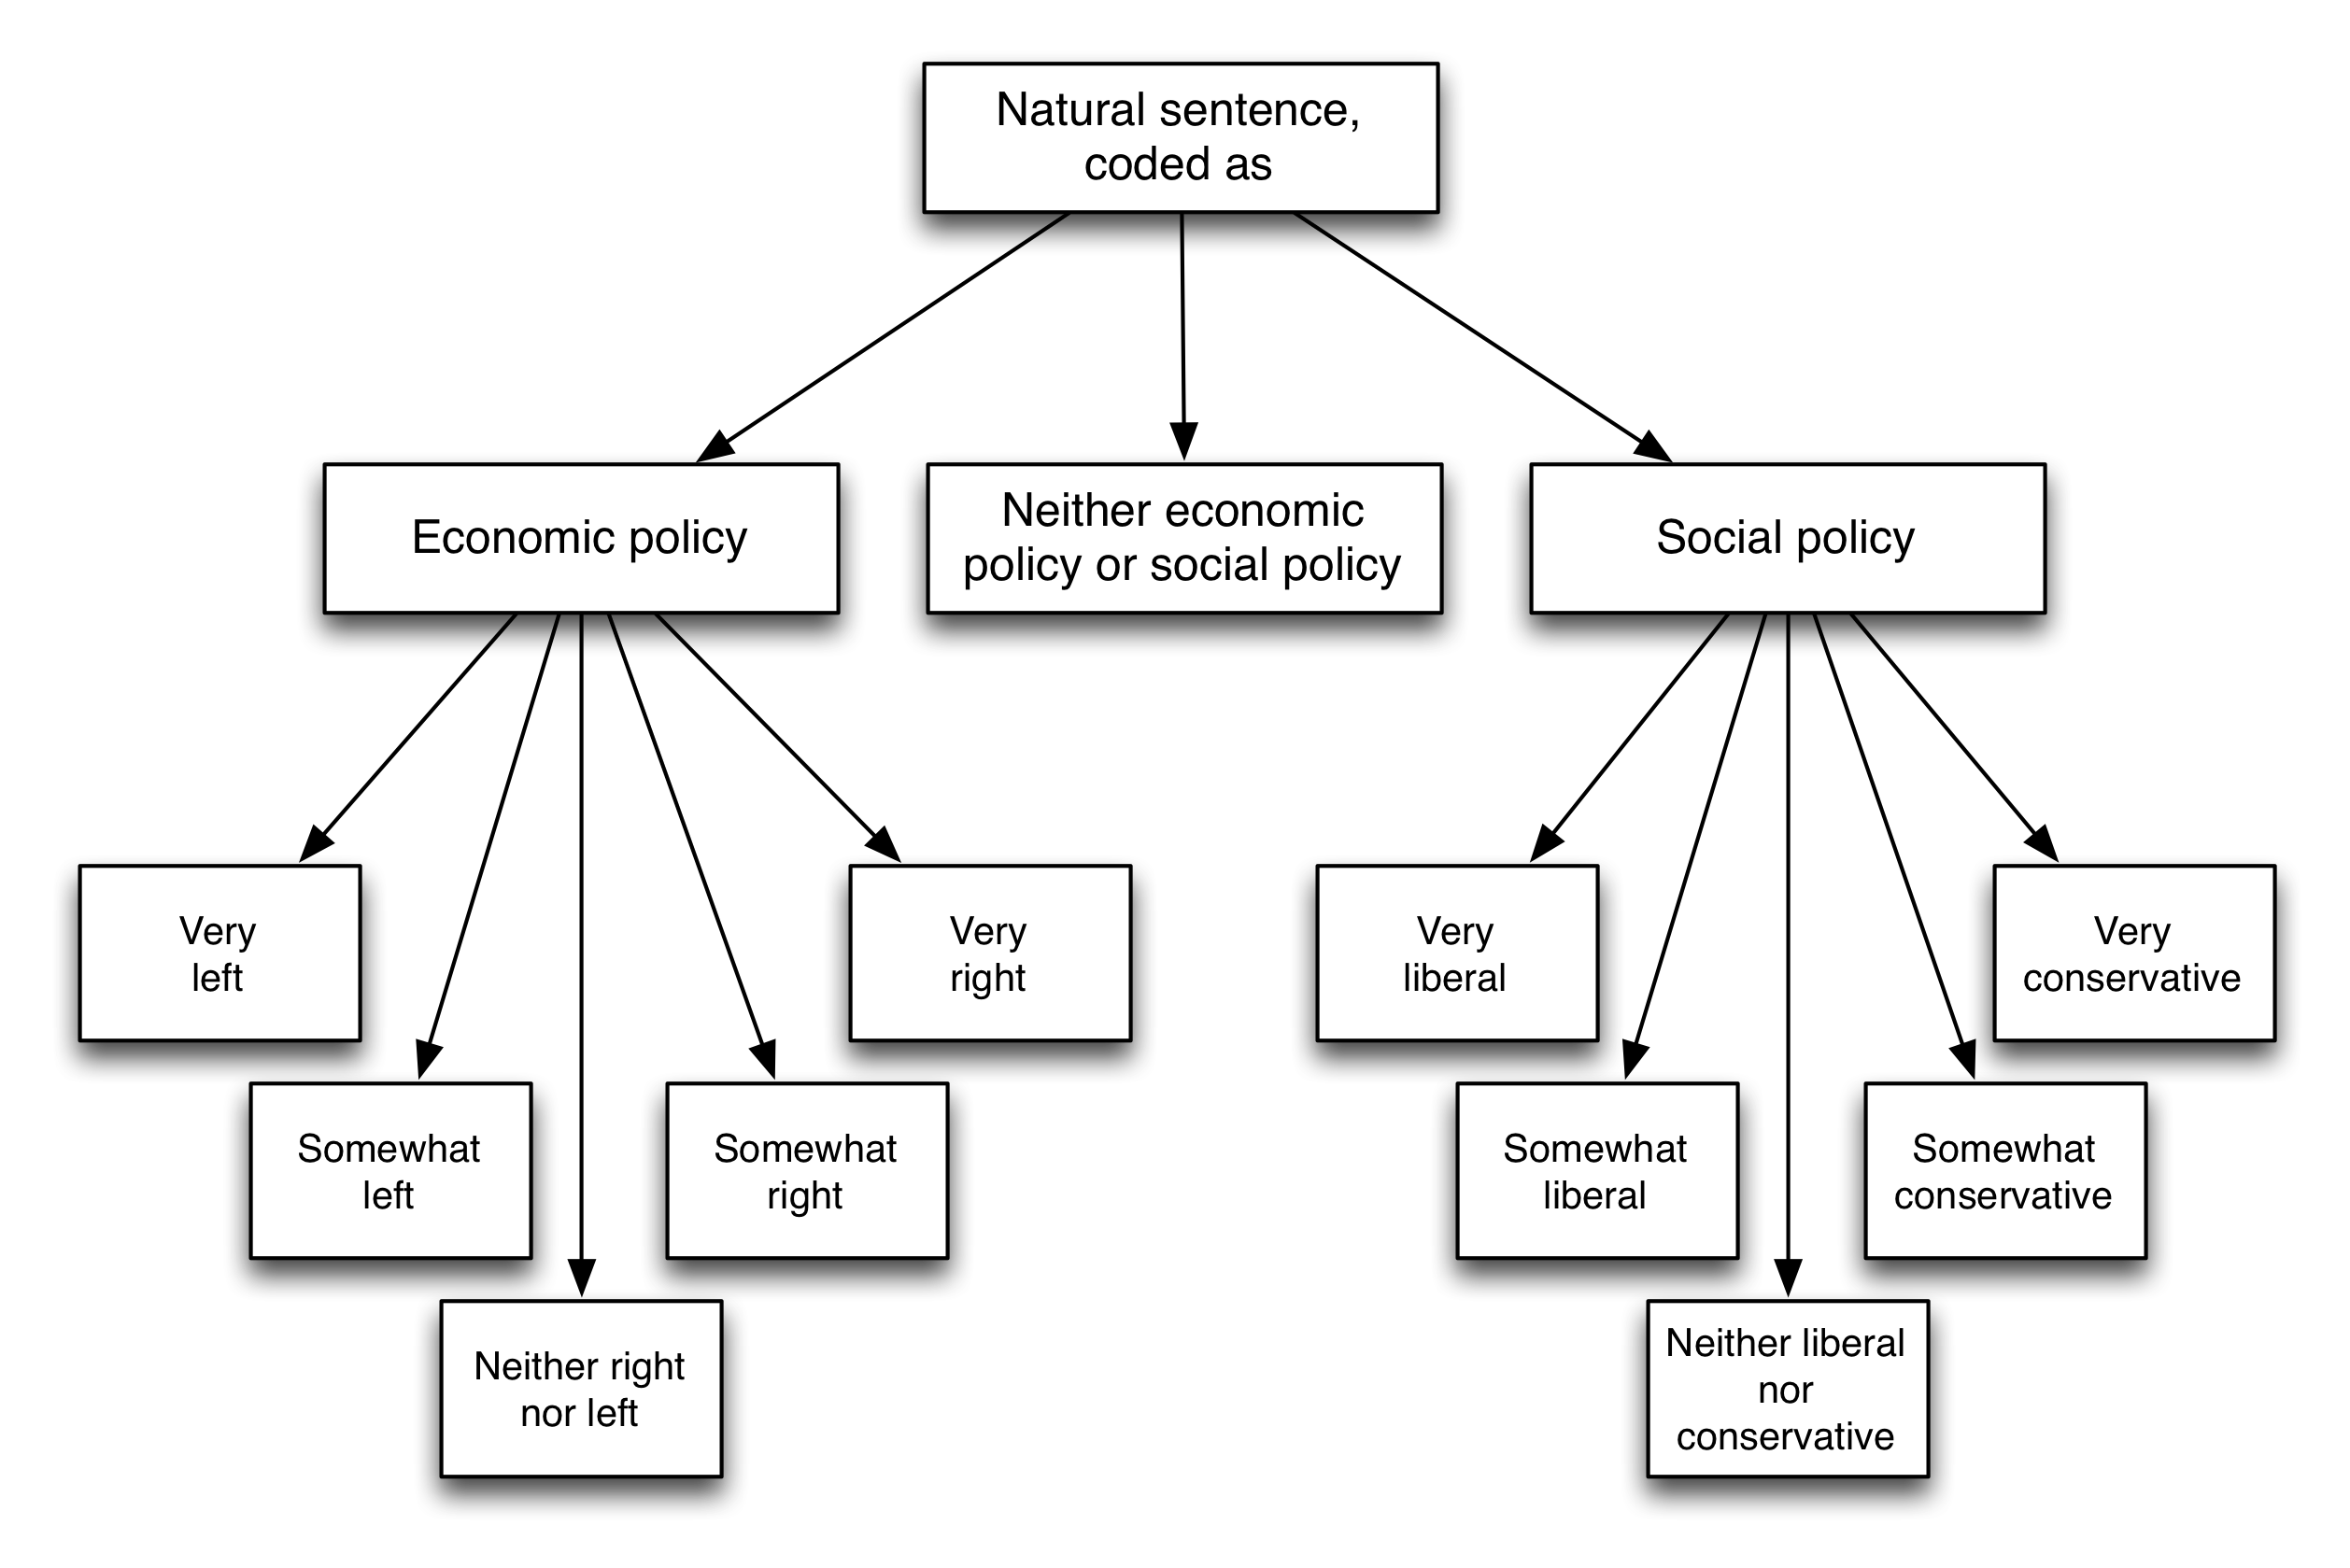 Figuur 5.5: Koderingskema van Benoit et al. (2016). Lesers is gevra om elke sin te klassifiseer as verwysing na ekonomiese beleid (links of regs), na die sosiale beleid (liberaal of konserwatief), of nie. Aangepas uit Benoit et al. (2016), figuur 1.